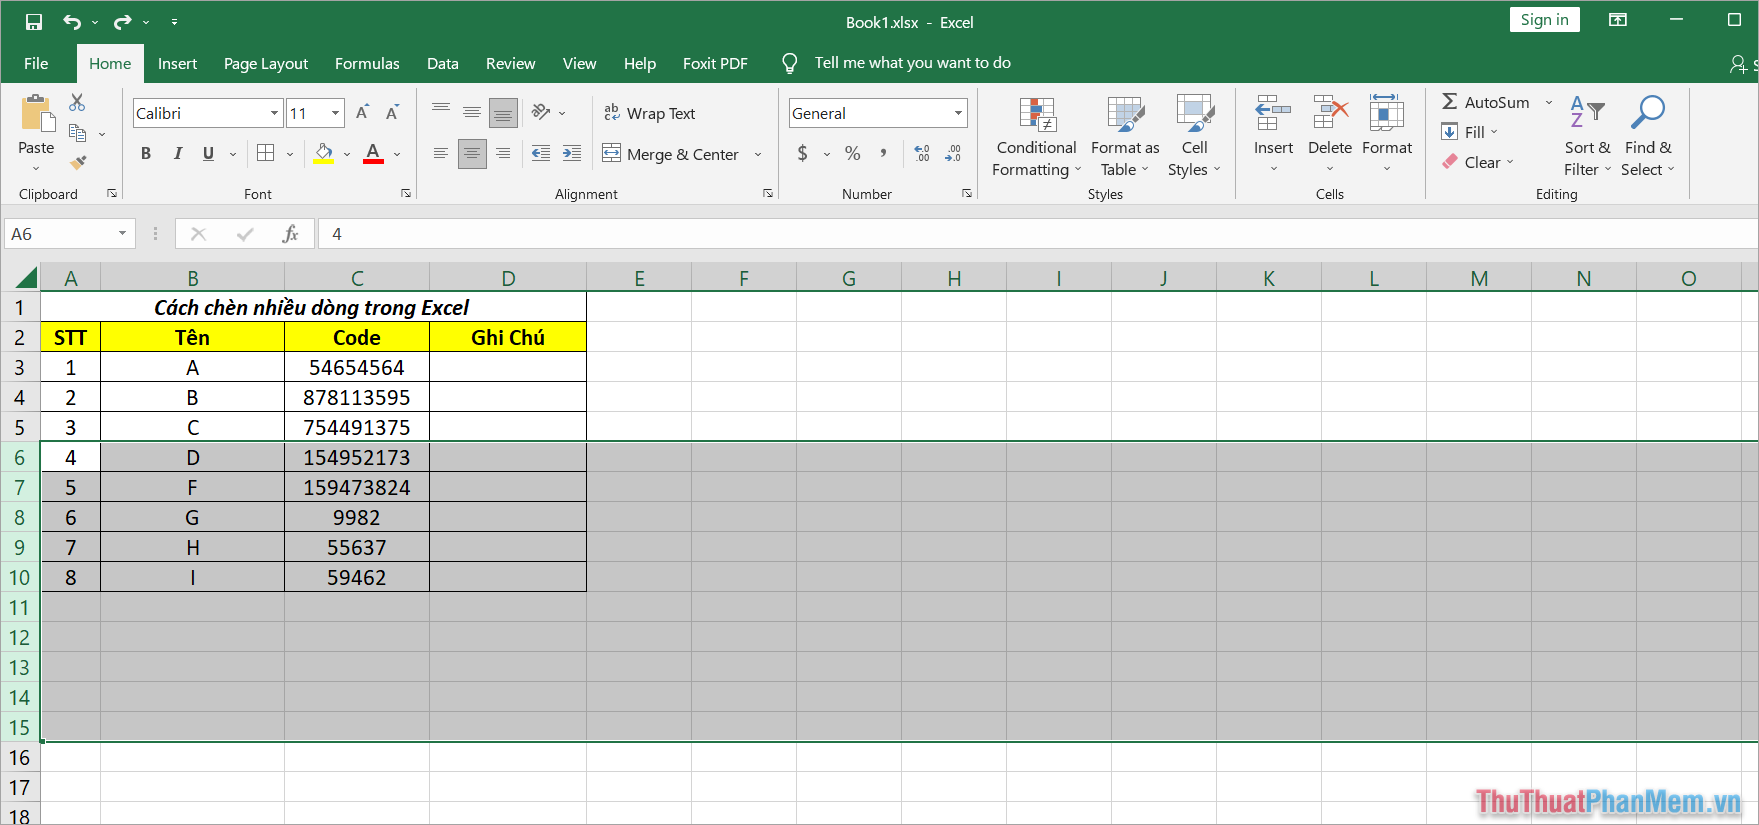 Cách chèn nhiều dòng trong Excel bằng lệnh Insert